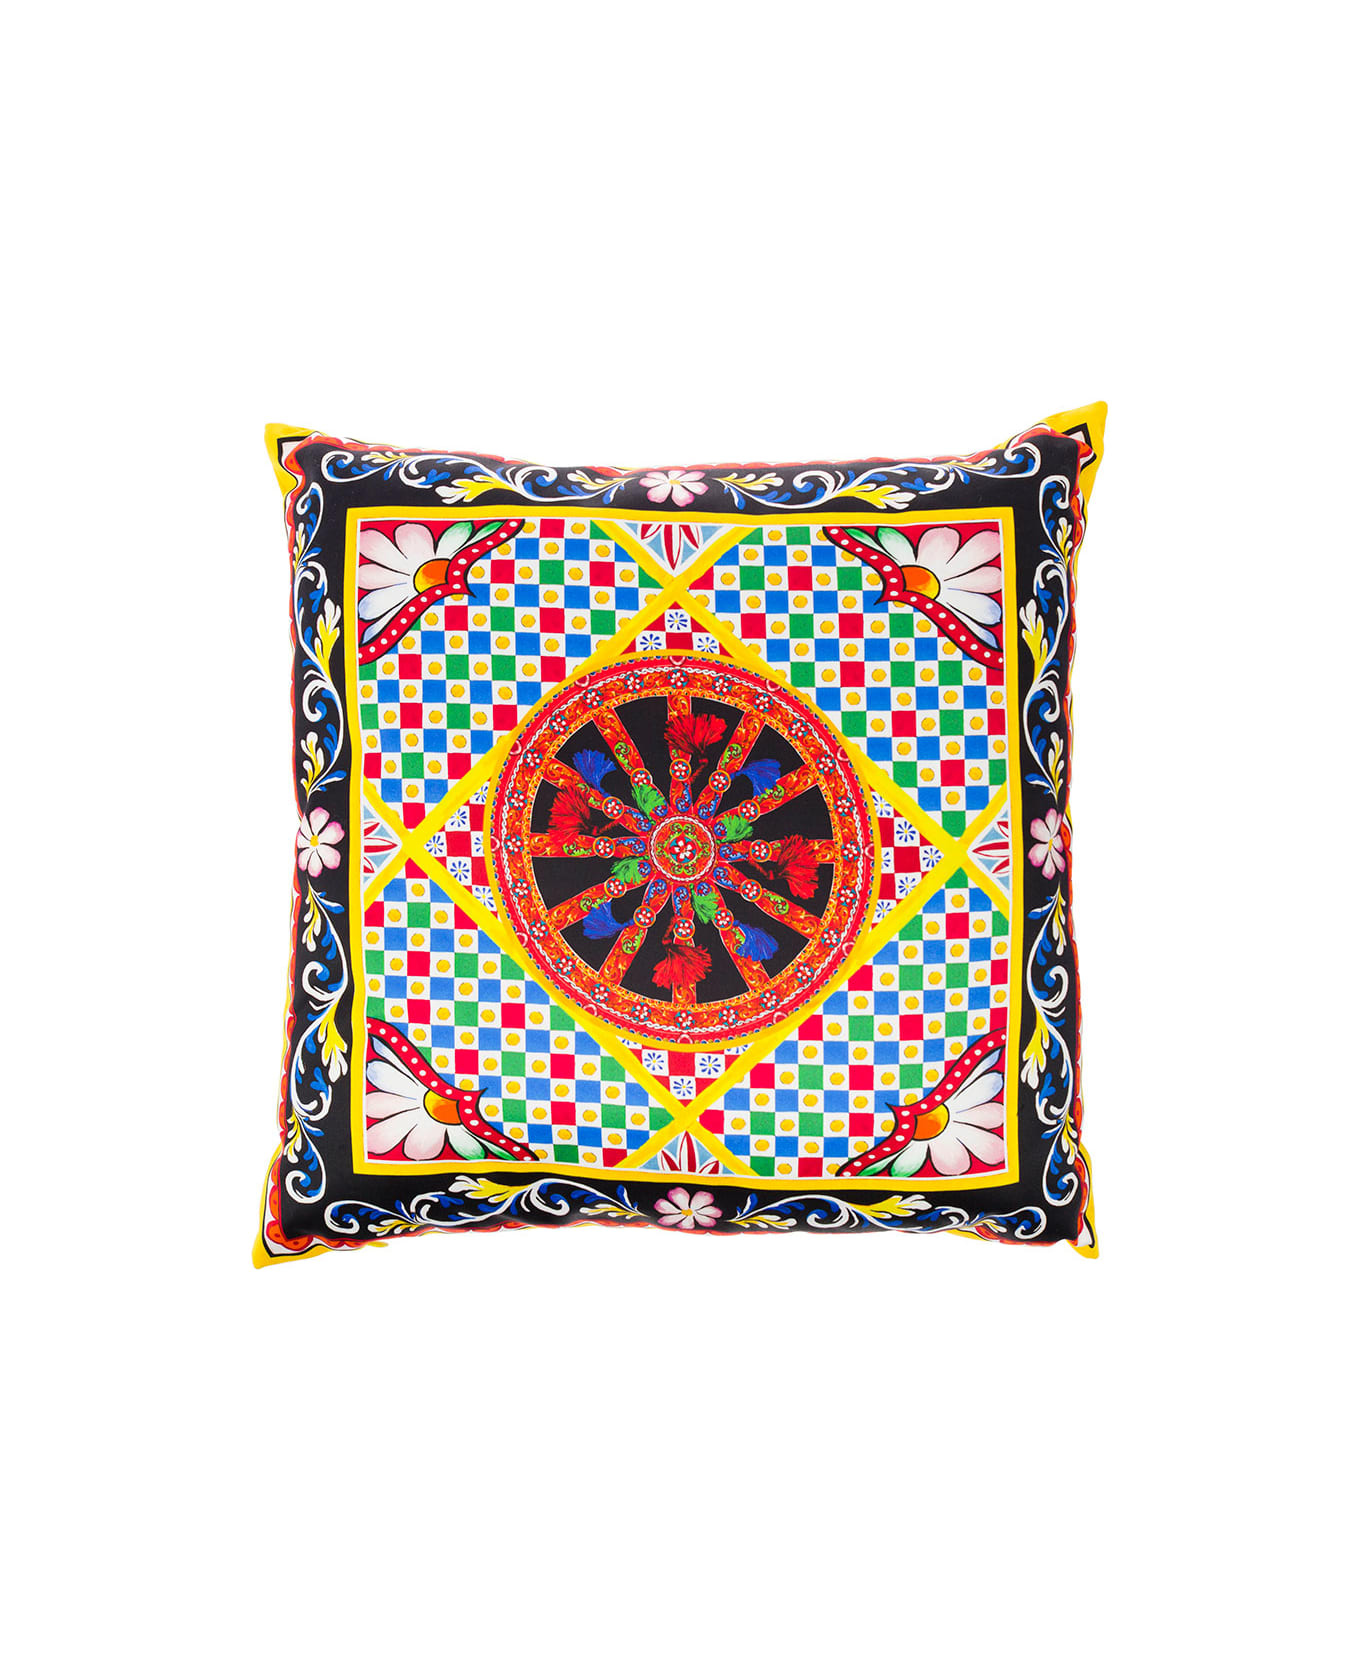 Dolce & Gabbana Multicolor Small Cushion With Carretto Foulard Print In Duchesse Cotton Dolce & Gabbana - Multicolor